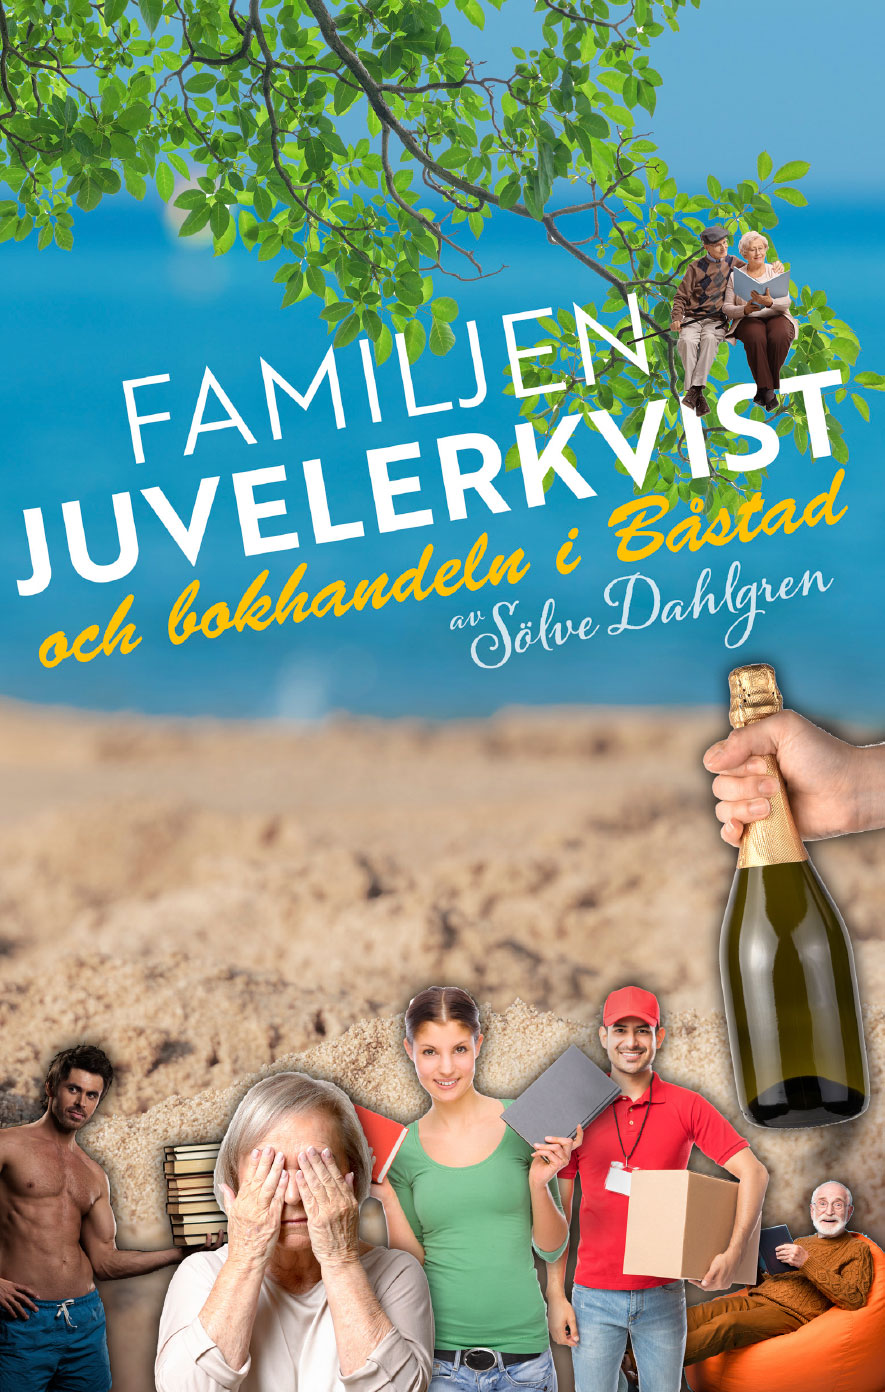 Läs mer om artikeln Familjen Juvelerkvist och bokhandeln i Båstad